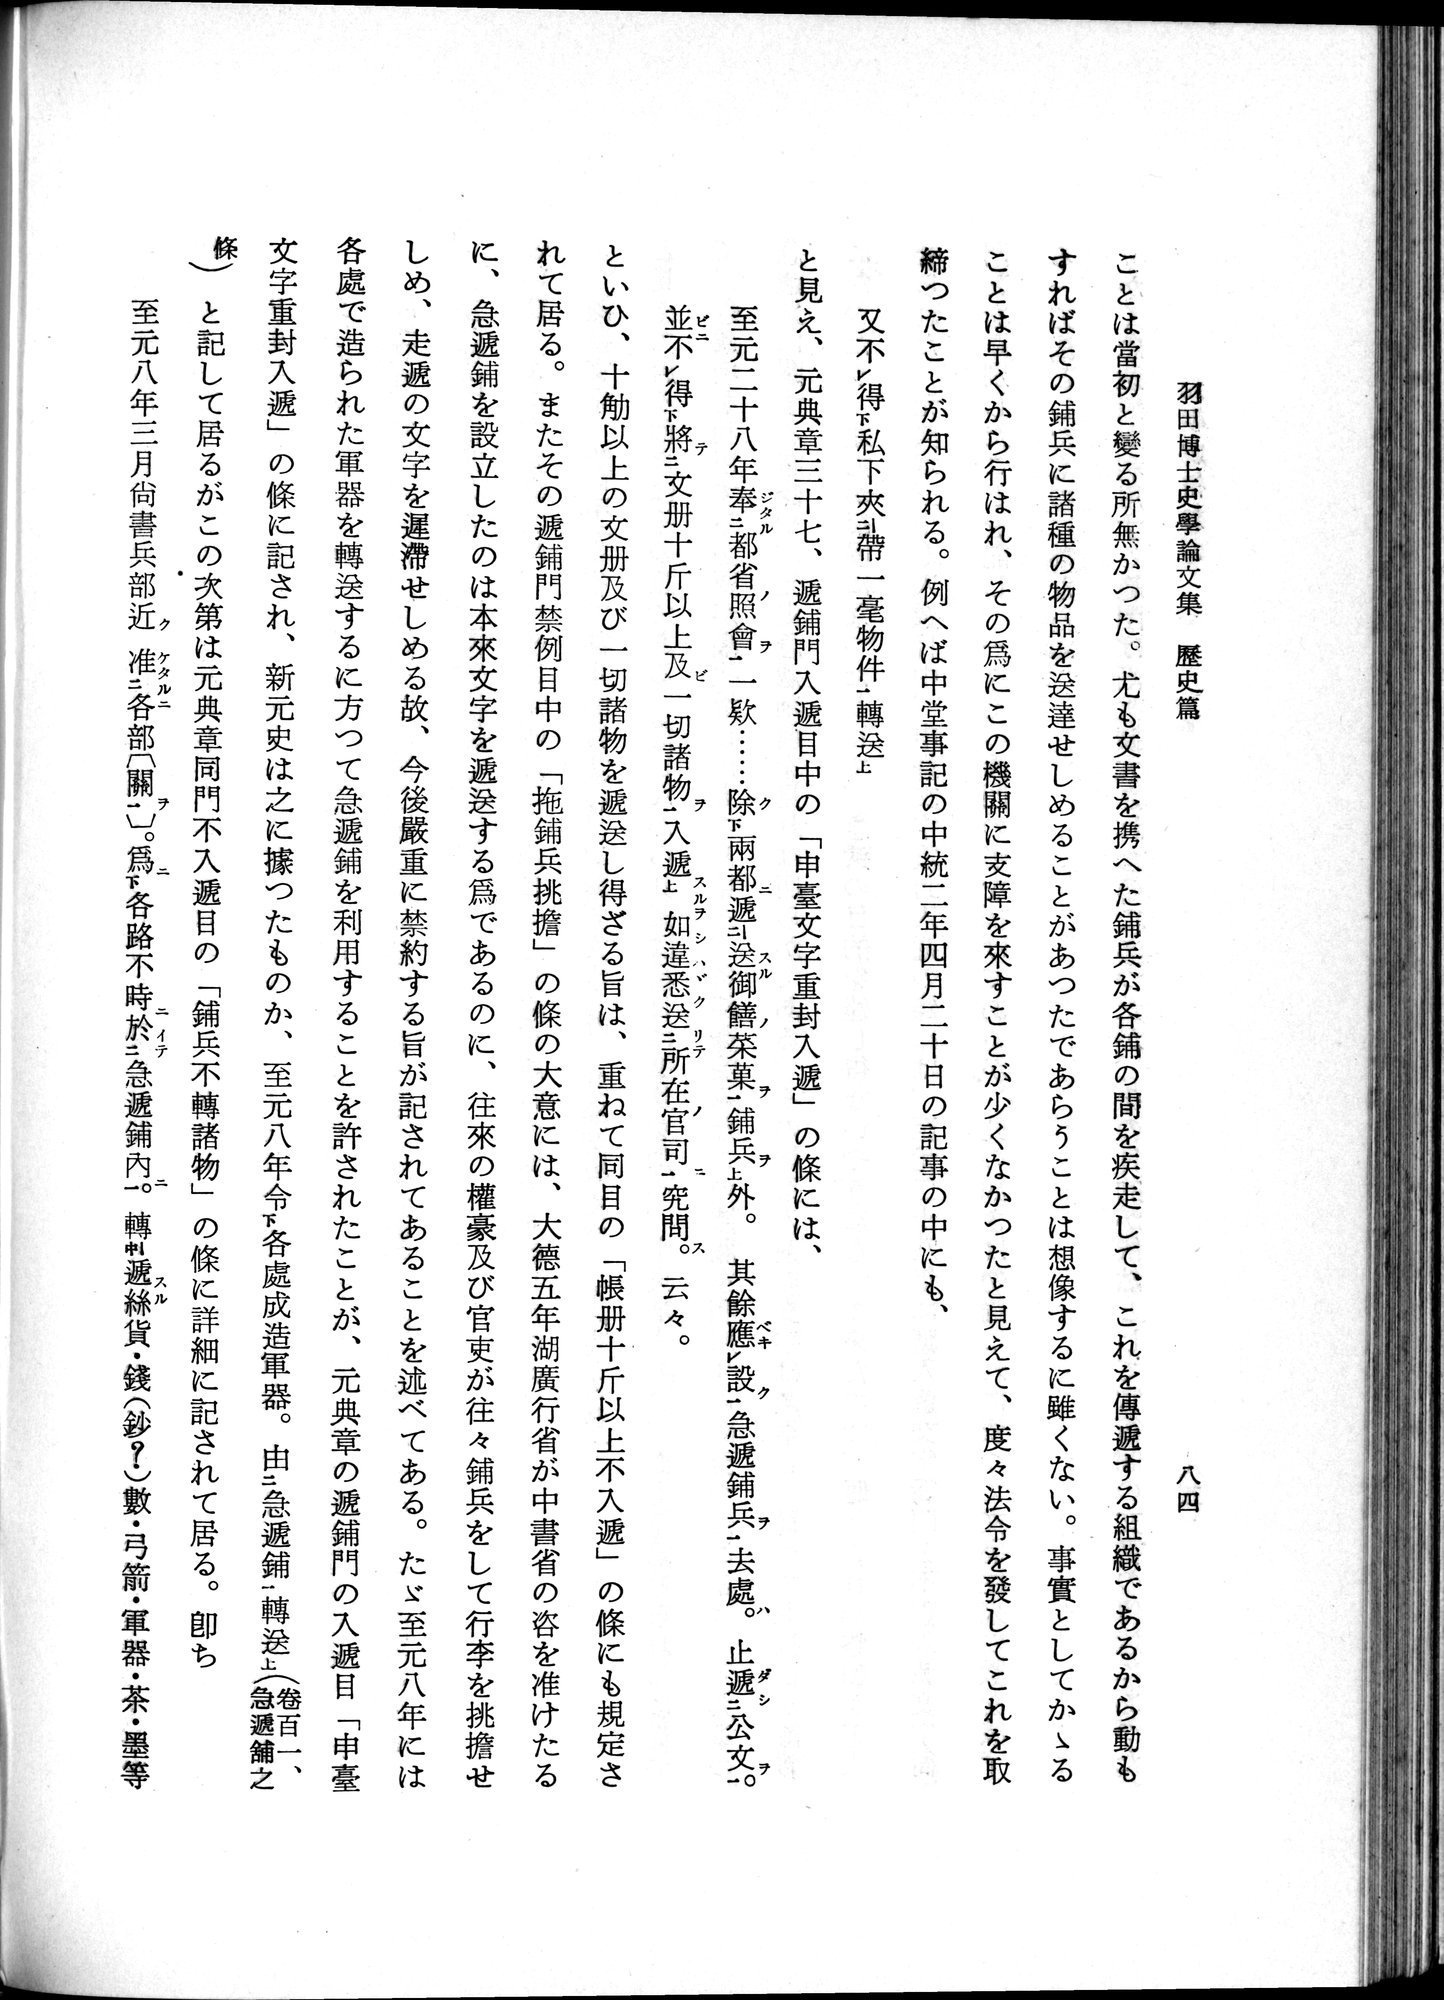 羽田博士史学論文集 : vol.1 / Page 122 (Grayscale High Resolution Image)